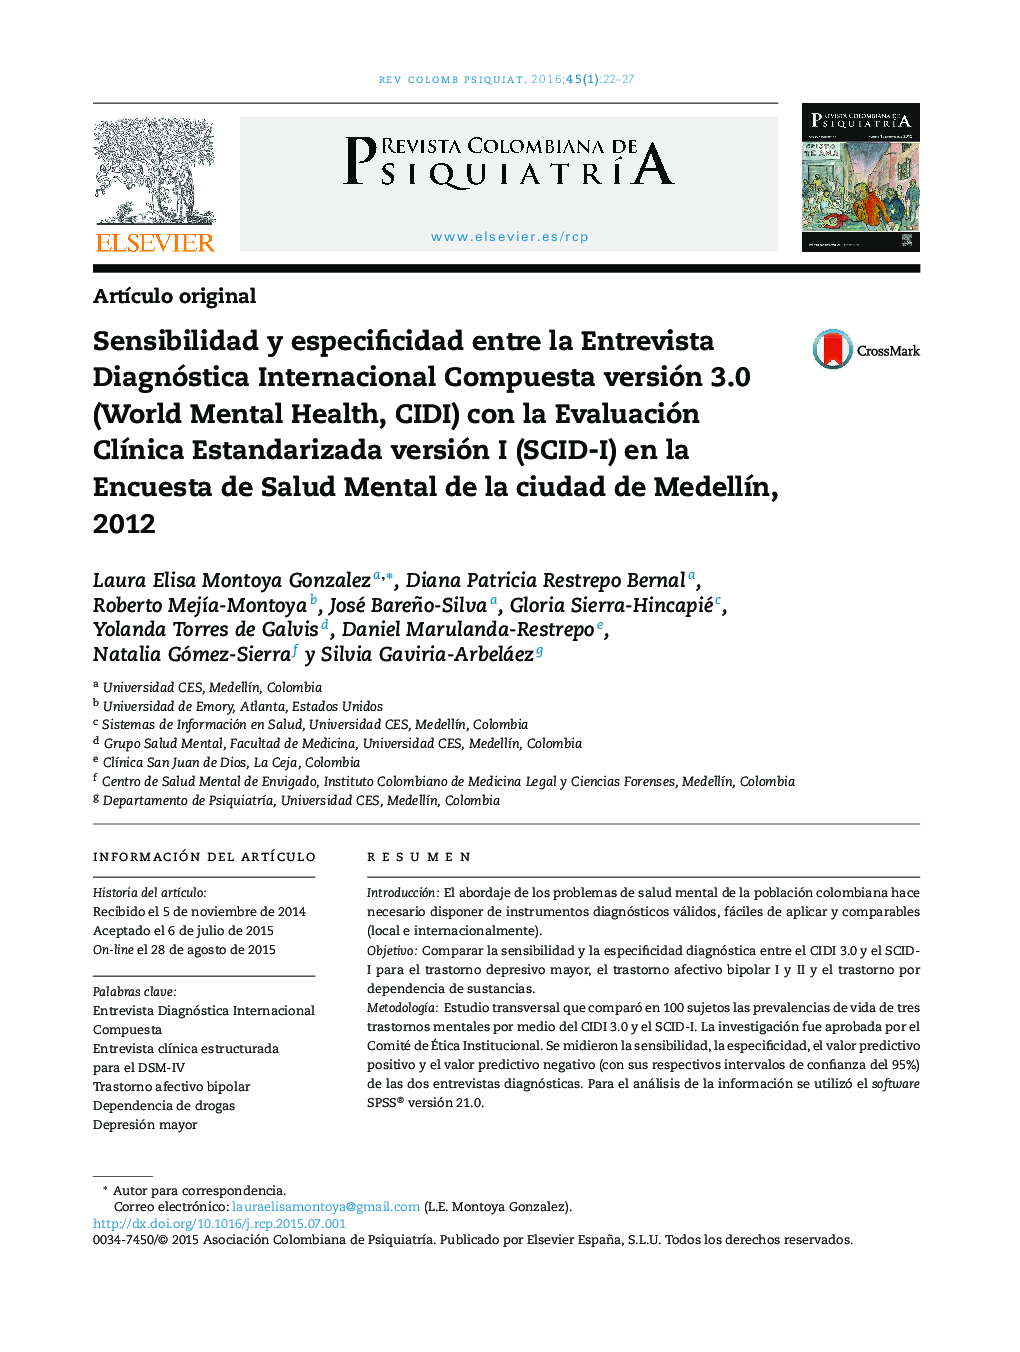 Sensibilidad y especificidad entre la Entrevista Diagnóstica Internacional Compuesta versión 3.0 (World Mental Health, CIDI) con la Evaluación ClÃ­nica Estandarizada versión I (SCID-I) en la Encuesta de Salud Mental de la ciudad de MedellÃ­n, 2012